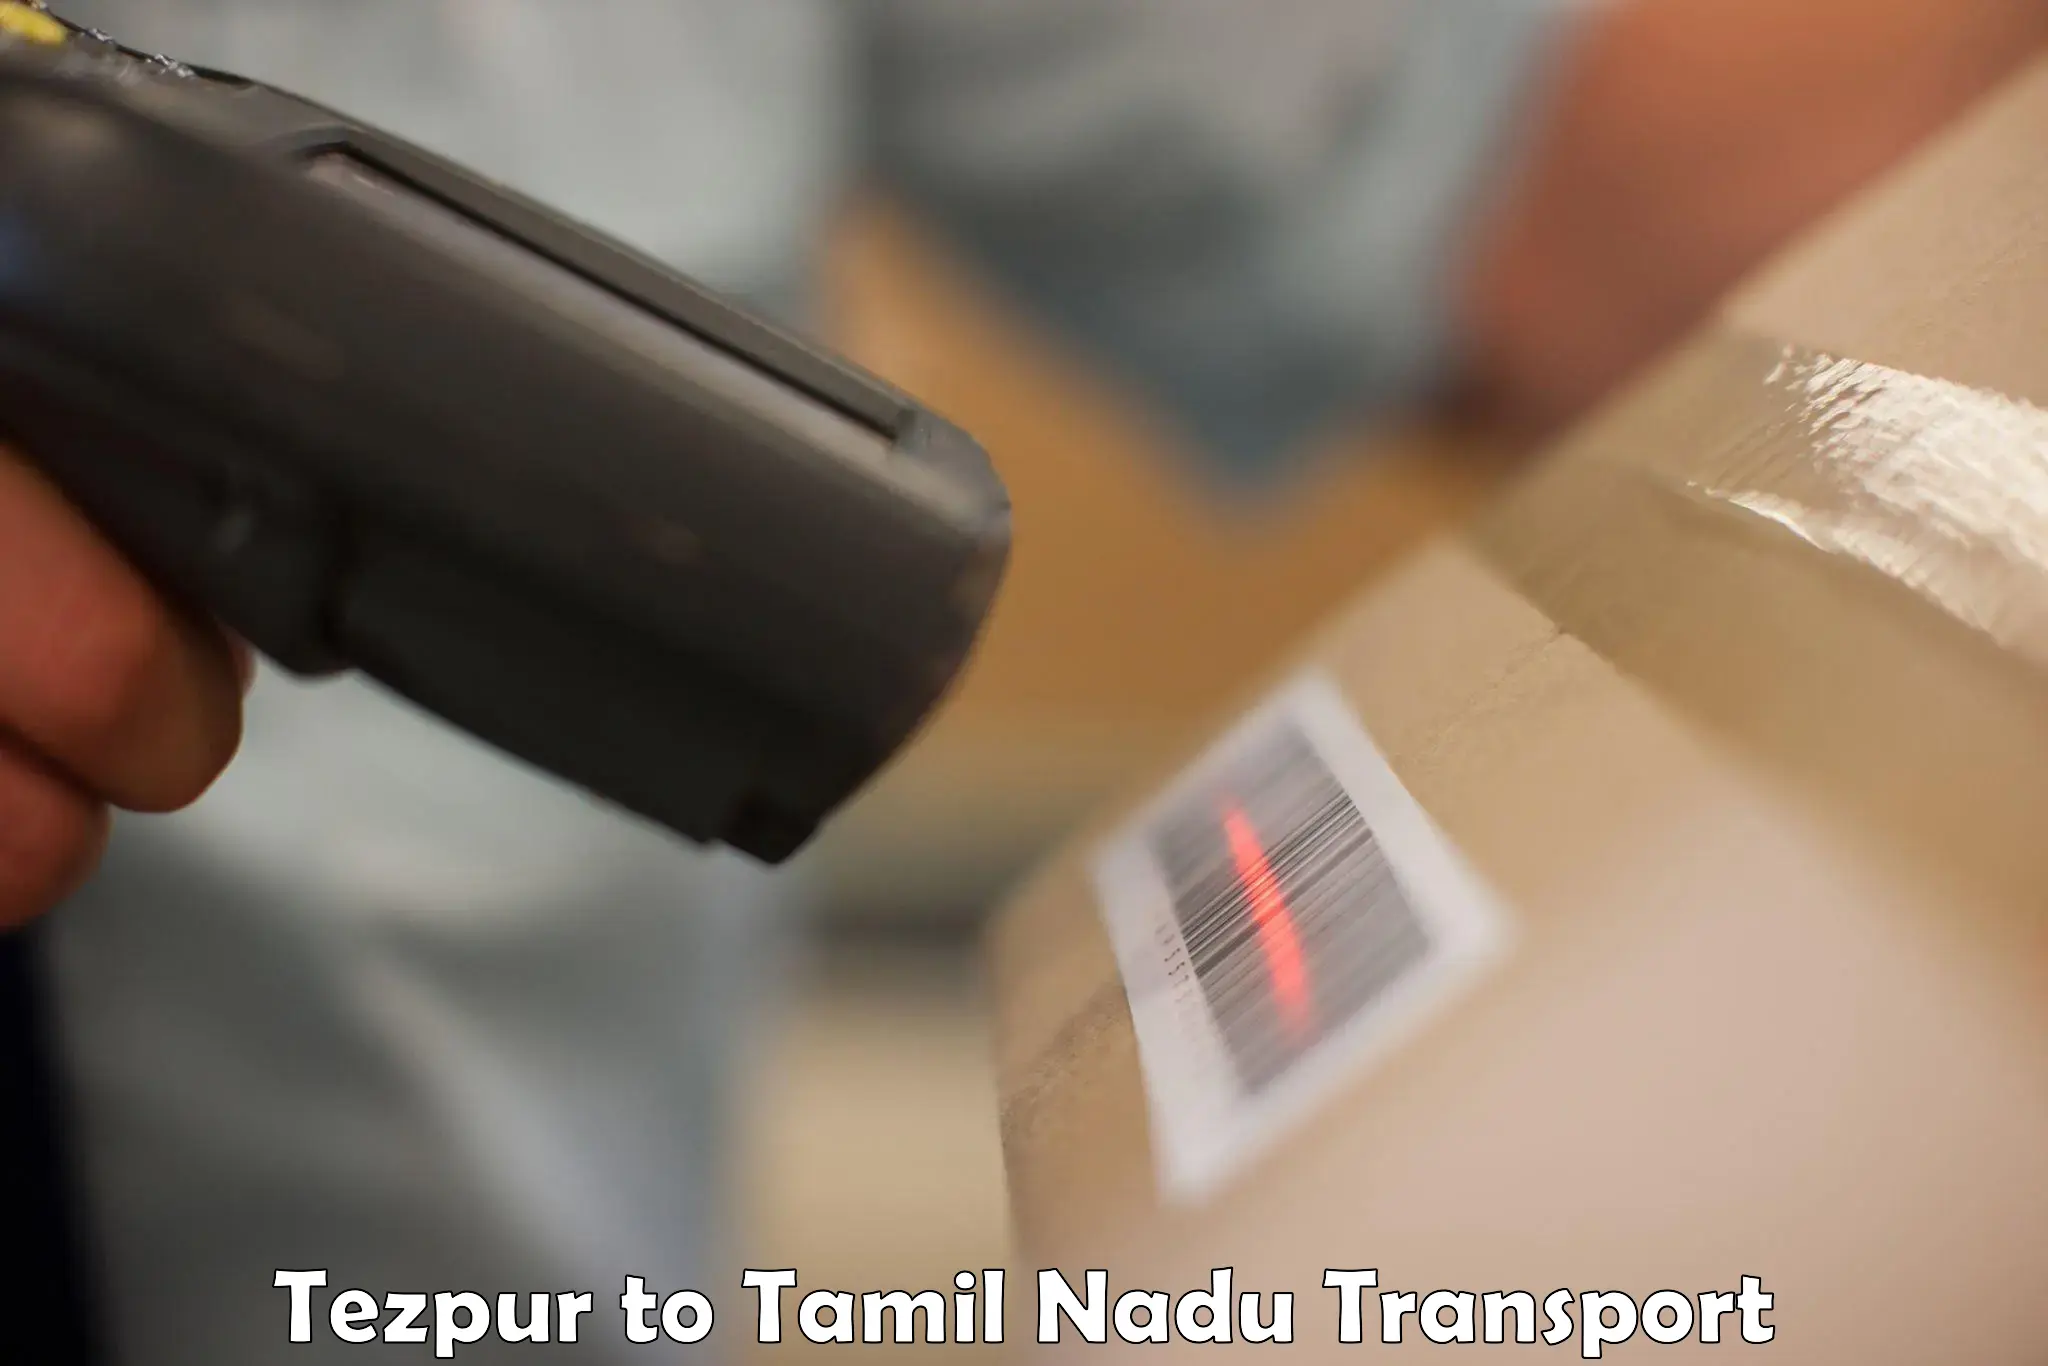 Bike transport service Tezpur to Chennai Port